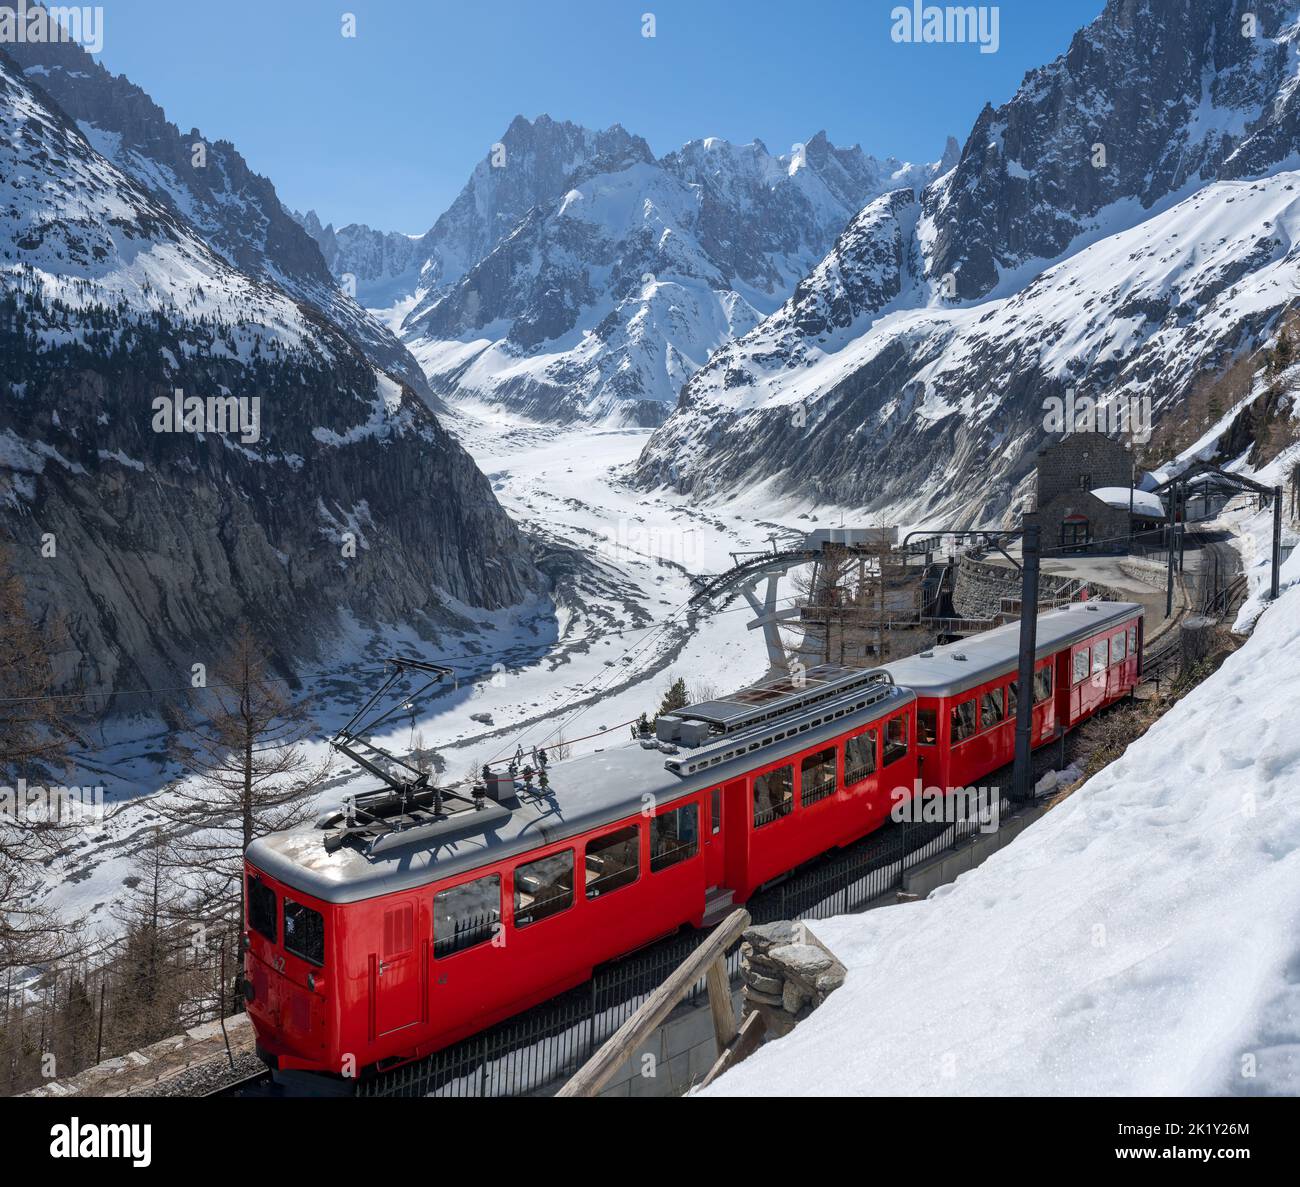 Treno Montenvers (treno a cremagliera) con le vette Les Grandes Jorasses e il ghiacciaio Mer de Glace. Hautes-Savoie, Alpi, Francia Foto Stock